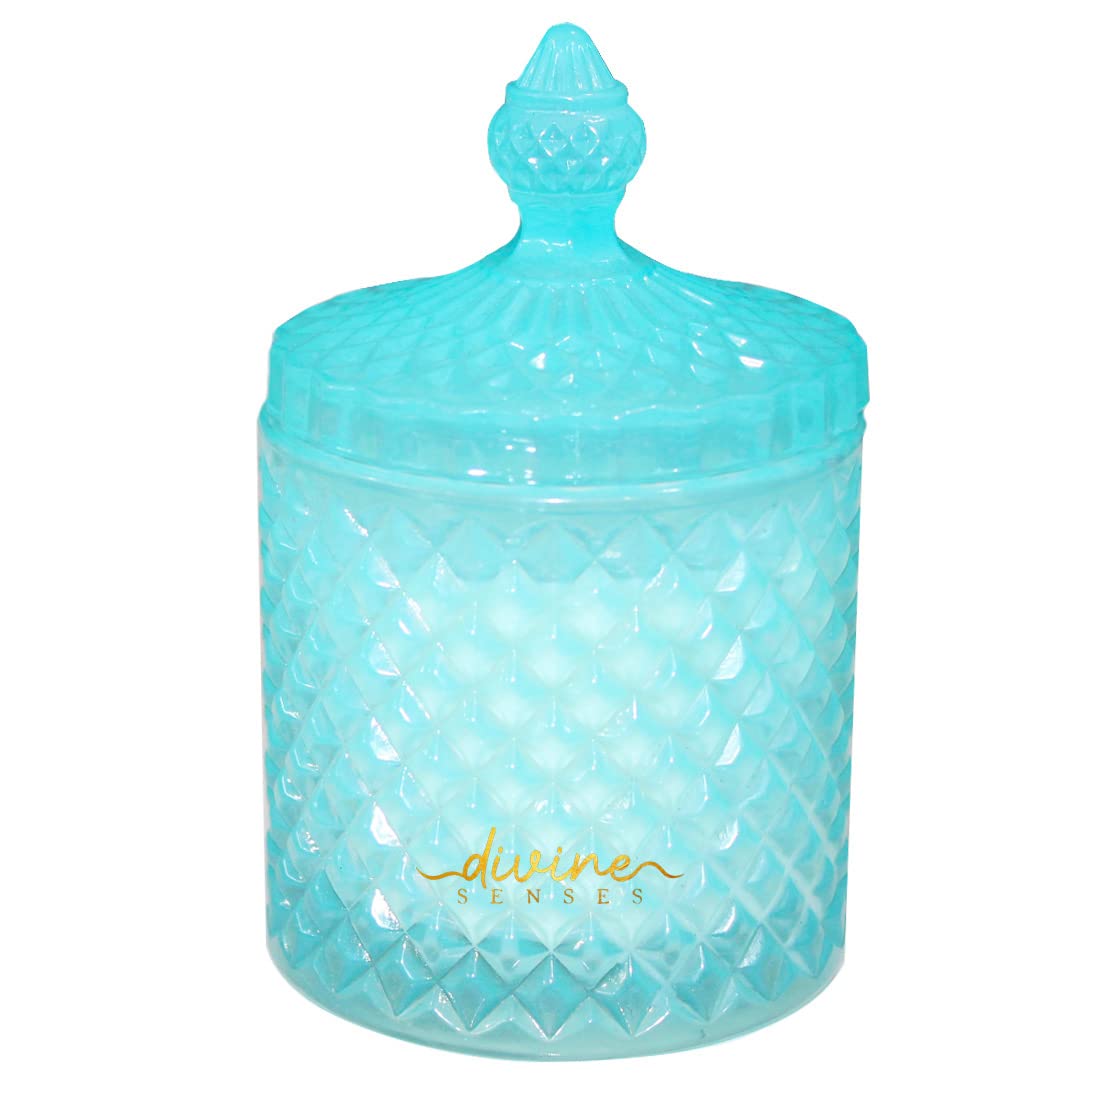 Lavender Rosemary Diamond Crystal Luxury Jar Candle (Blue)